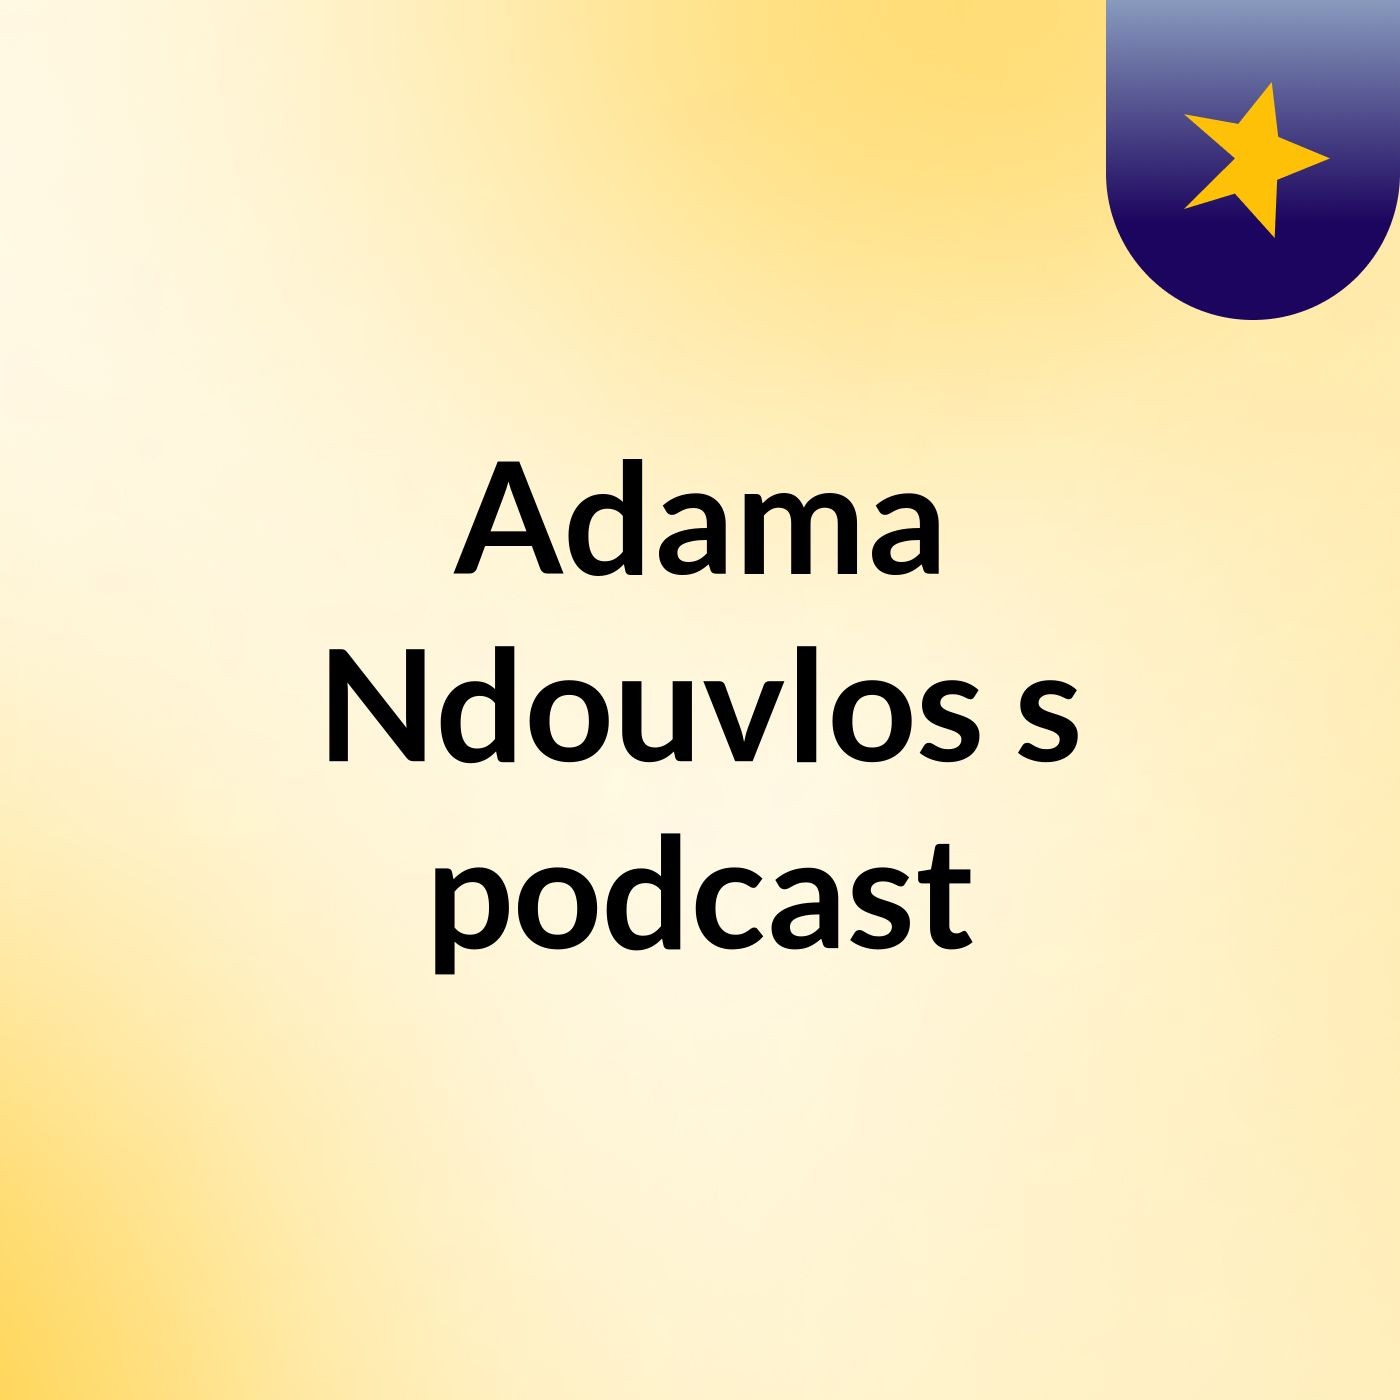 Adama Ndouvlos's podcast